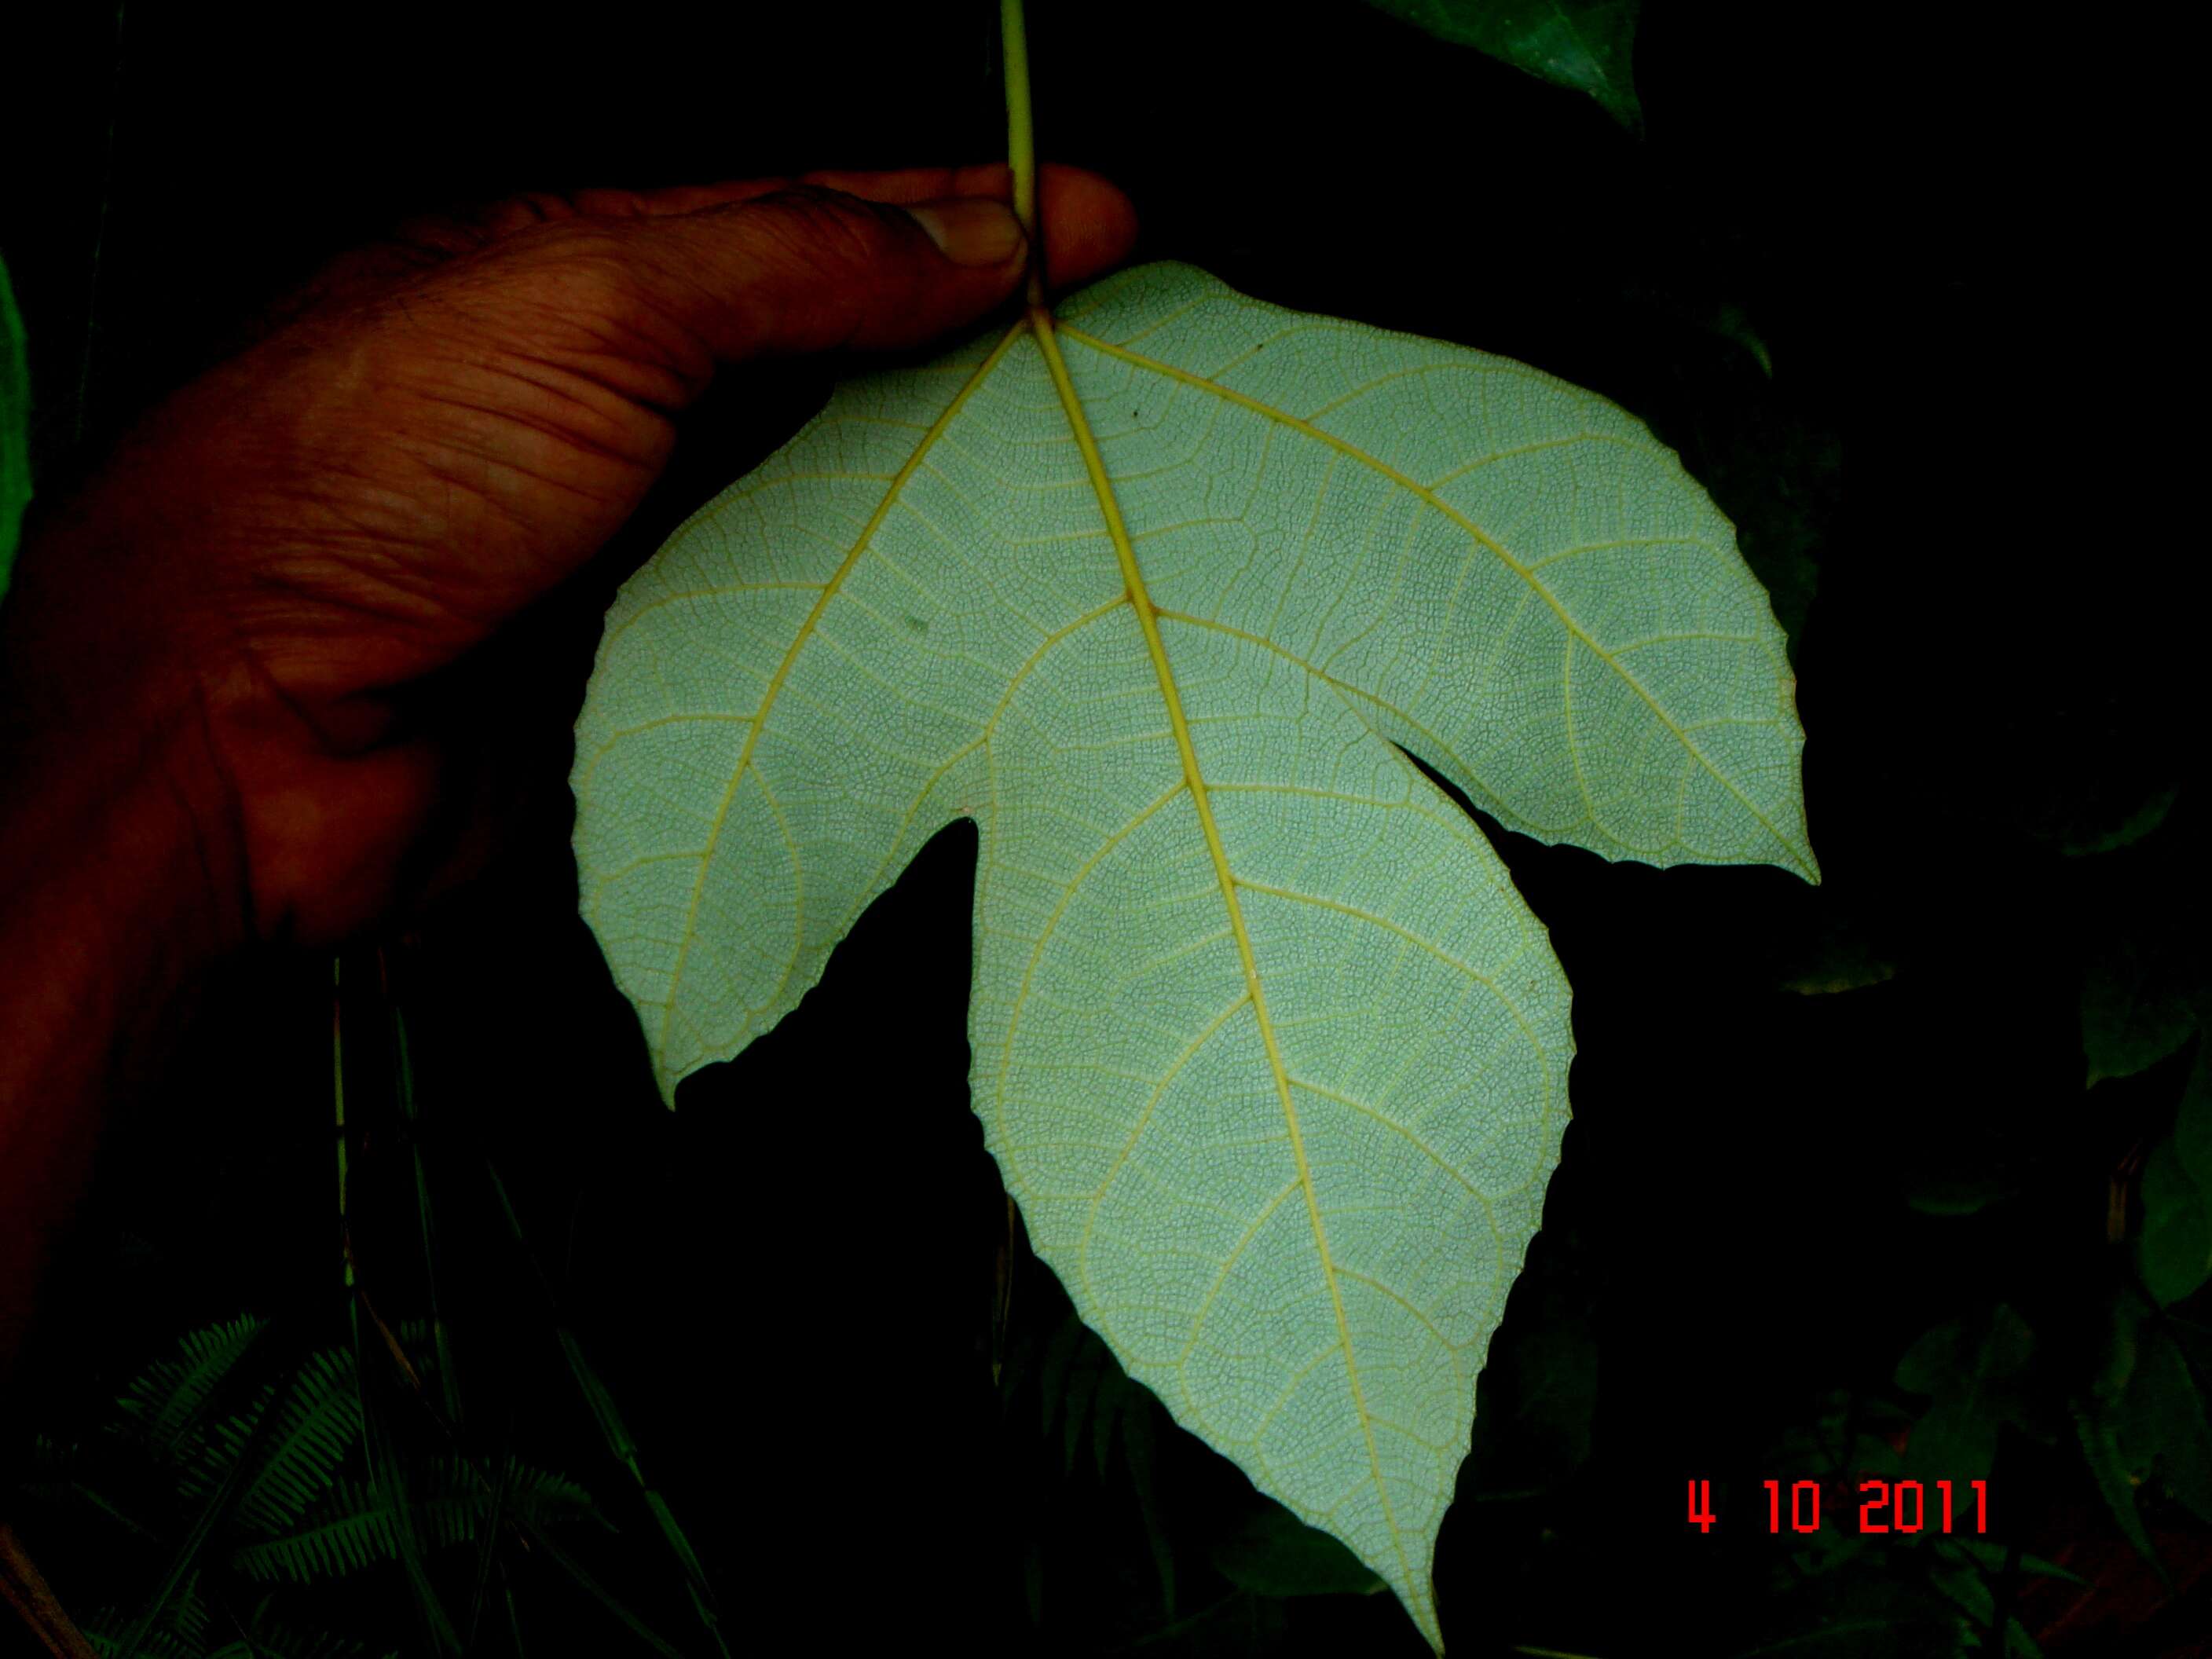 Image of Ficus grossularioides Burm. fil.